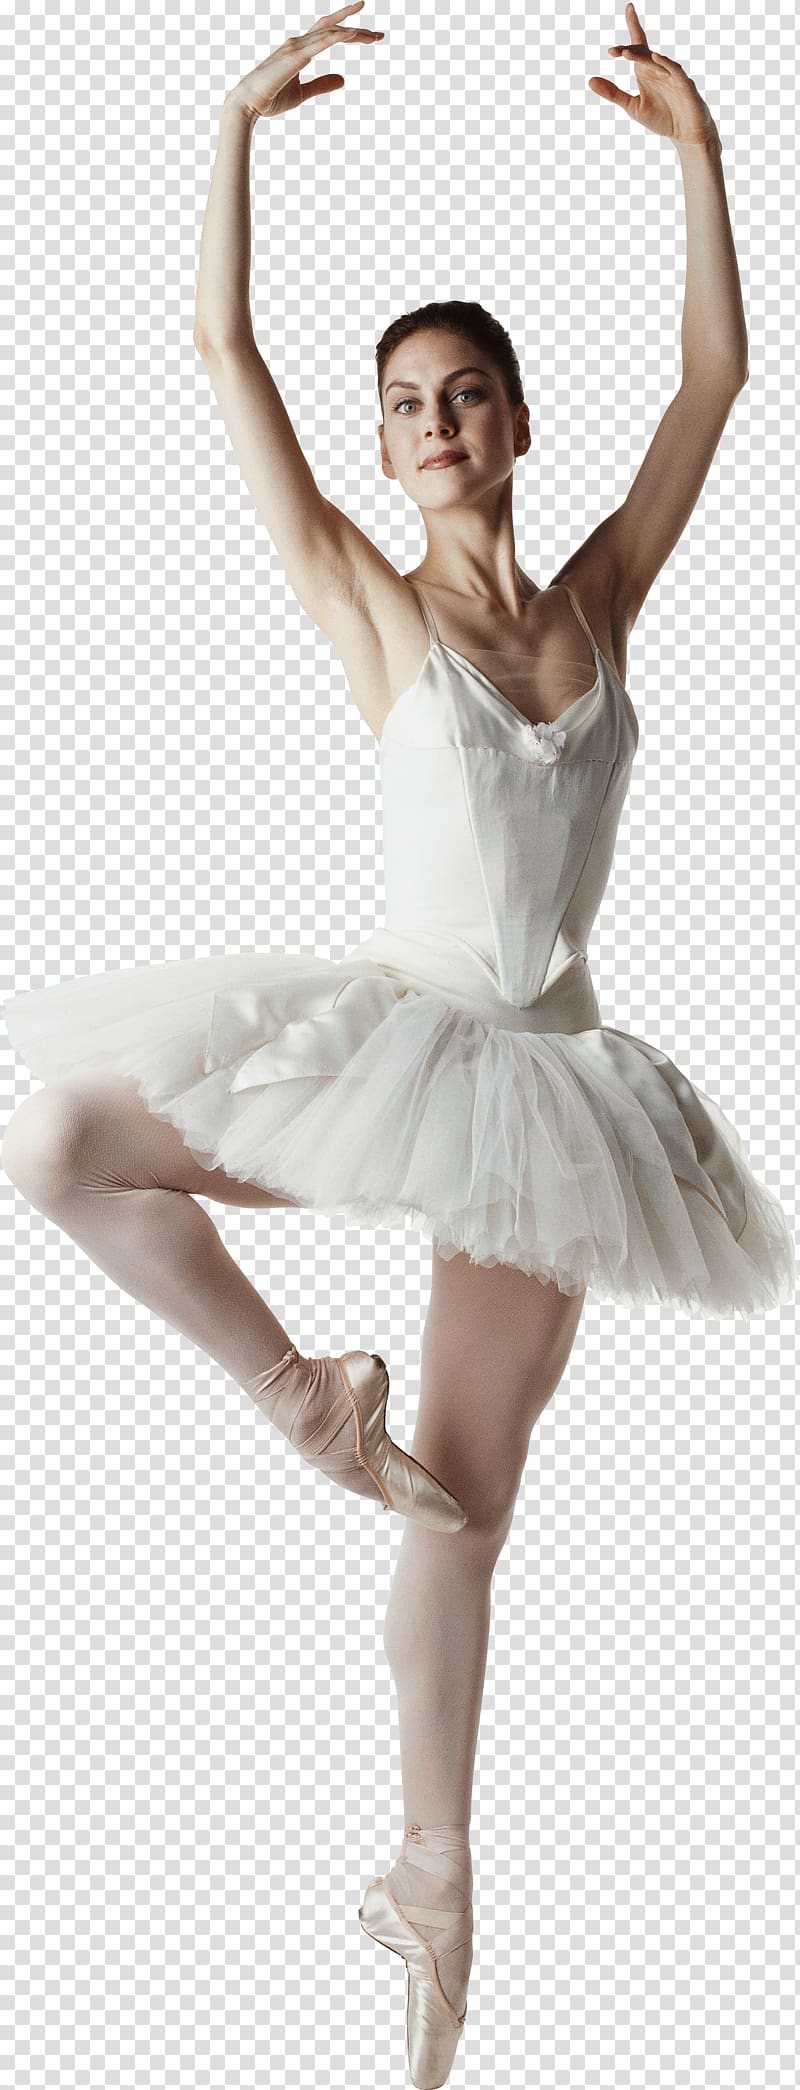 Ballet dancer transparent background PNG clipart